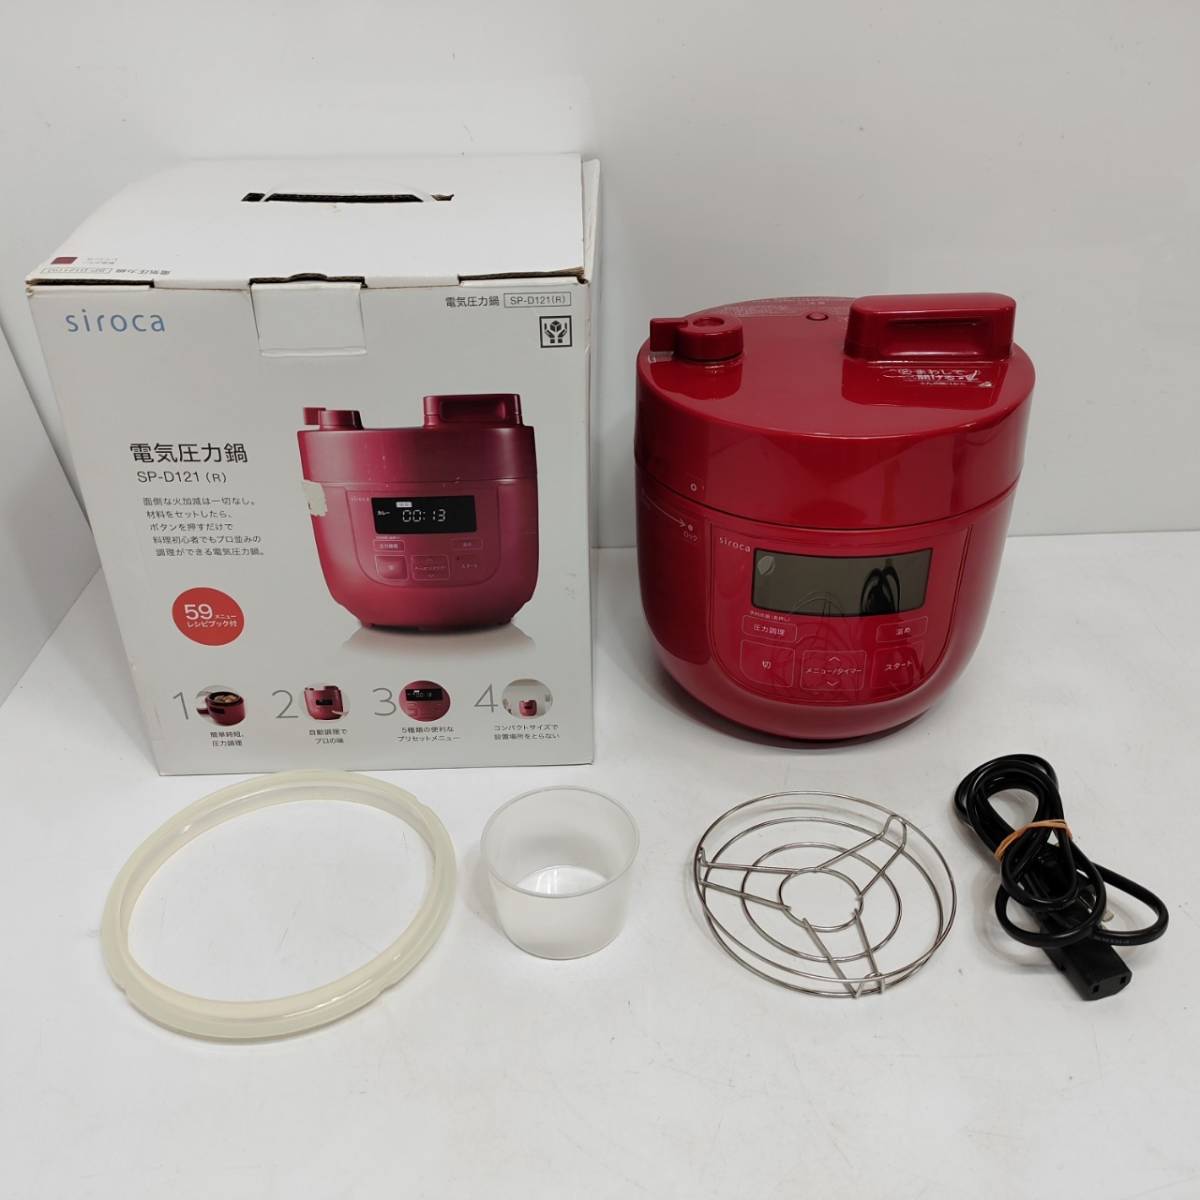 ● Управлять Shiroka SP-D121 Домашнее электрическое давление горшок с красным красный время саван